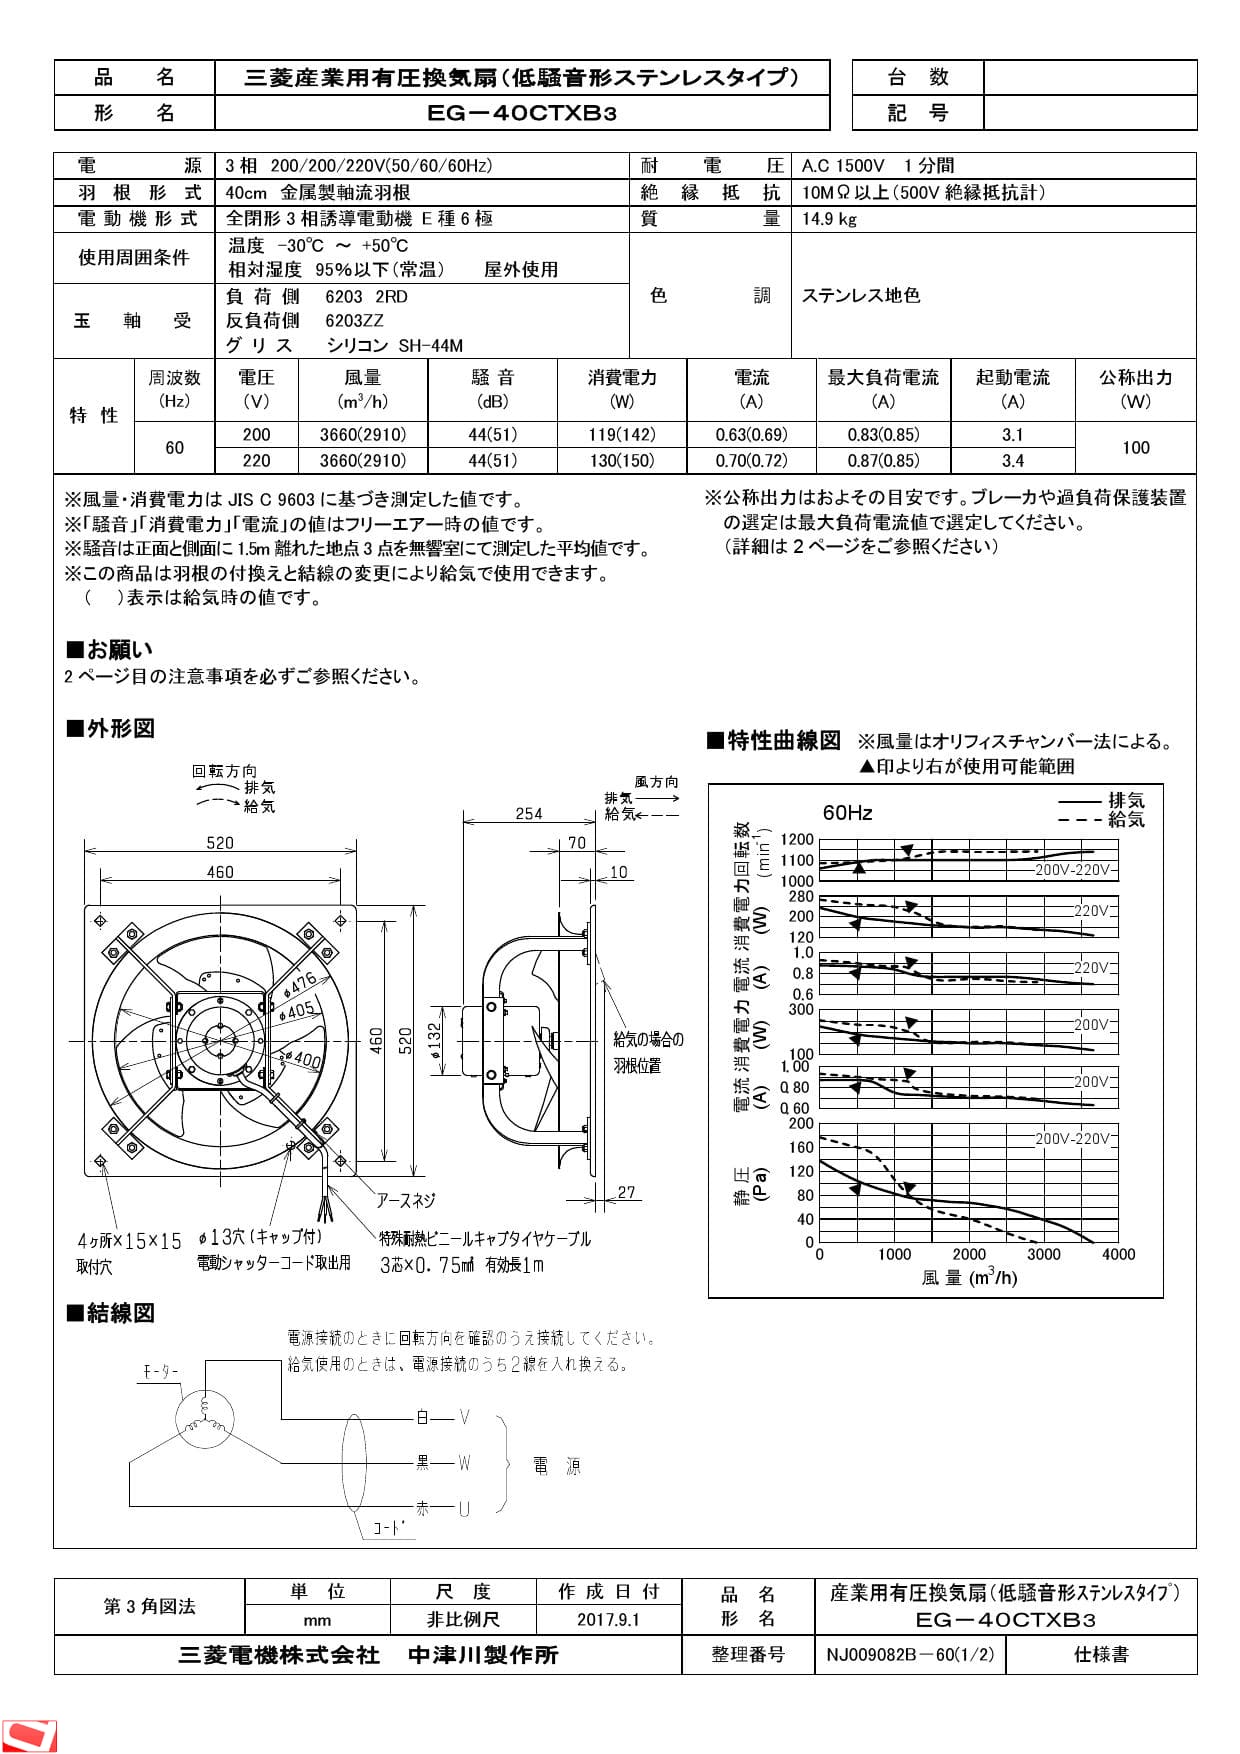 三菱電機 EG-40CTXB3納入仕様図 | 通販 プロストア ダイレクト